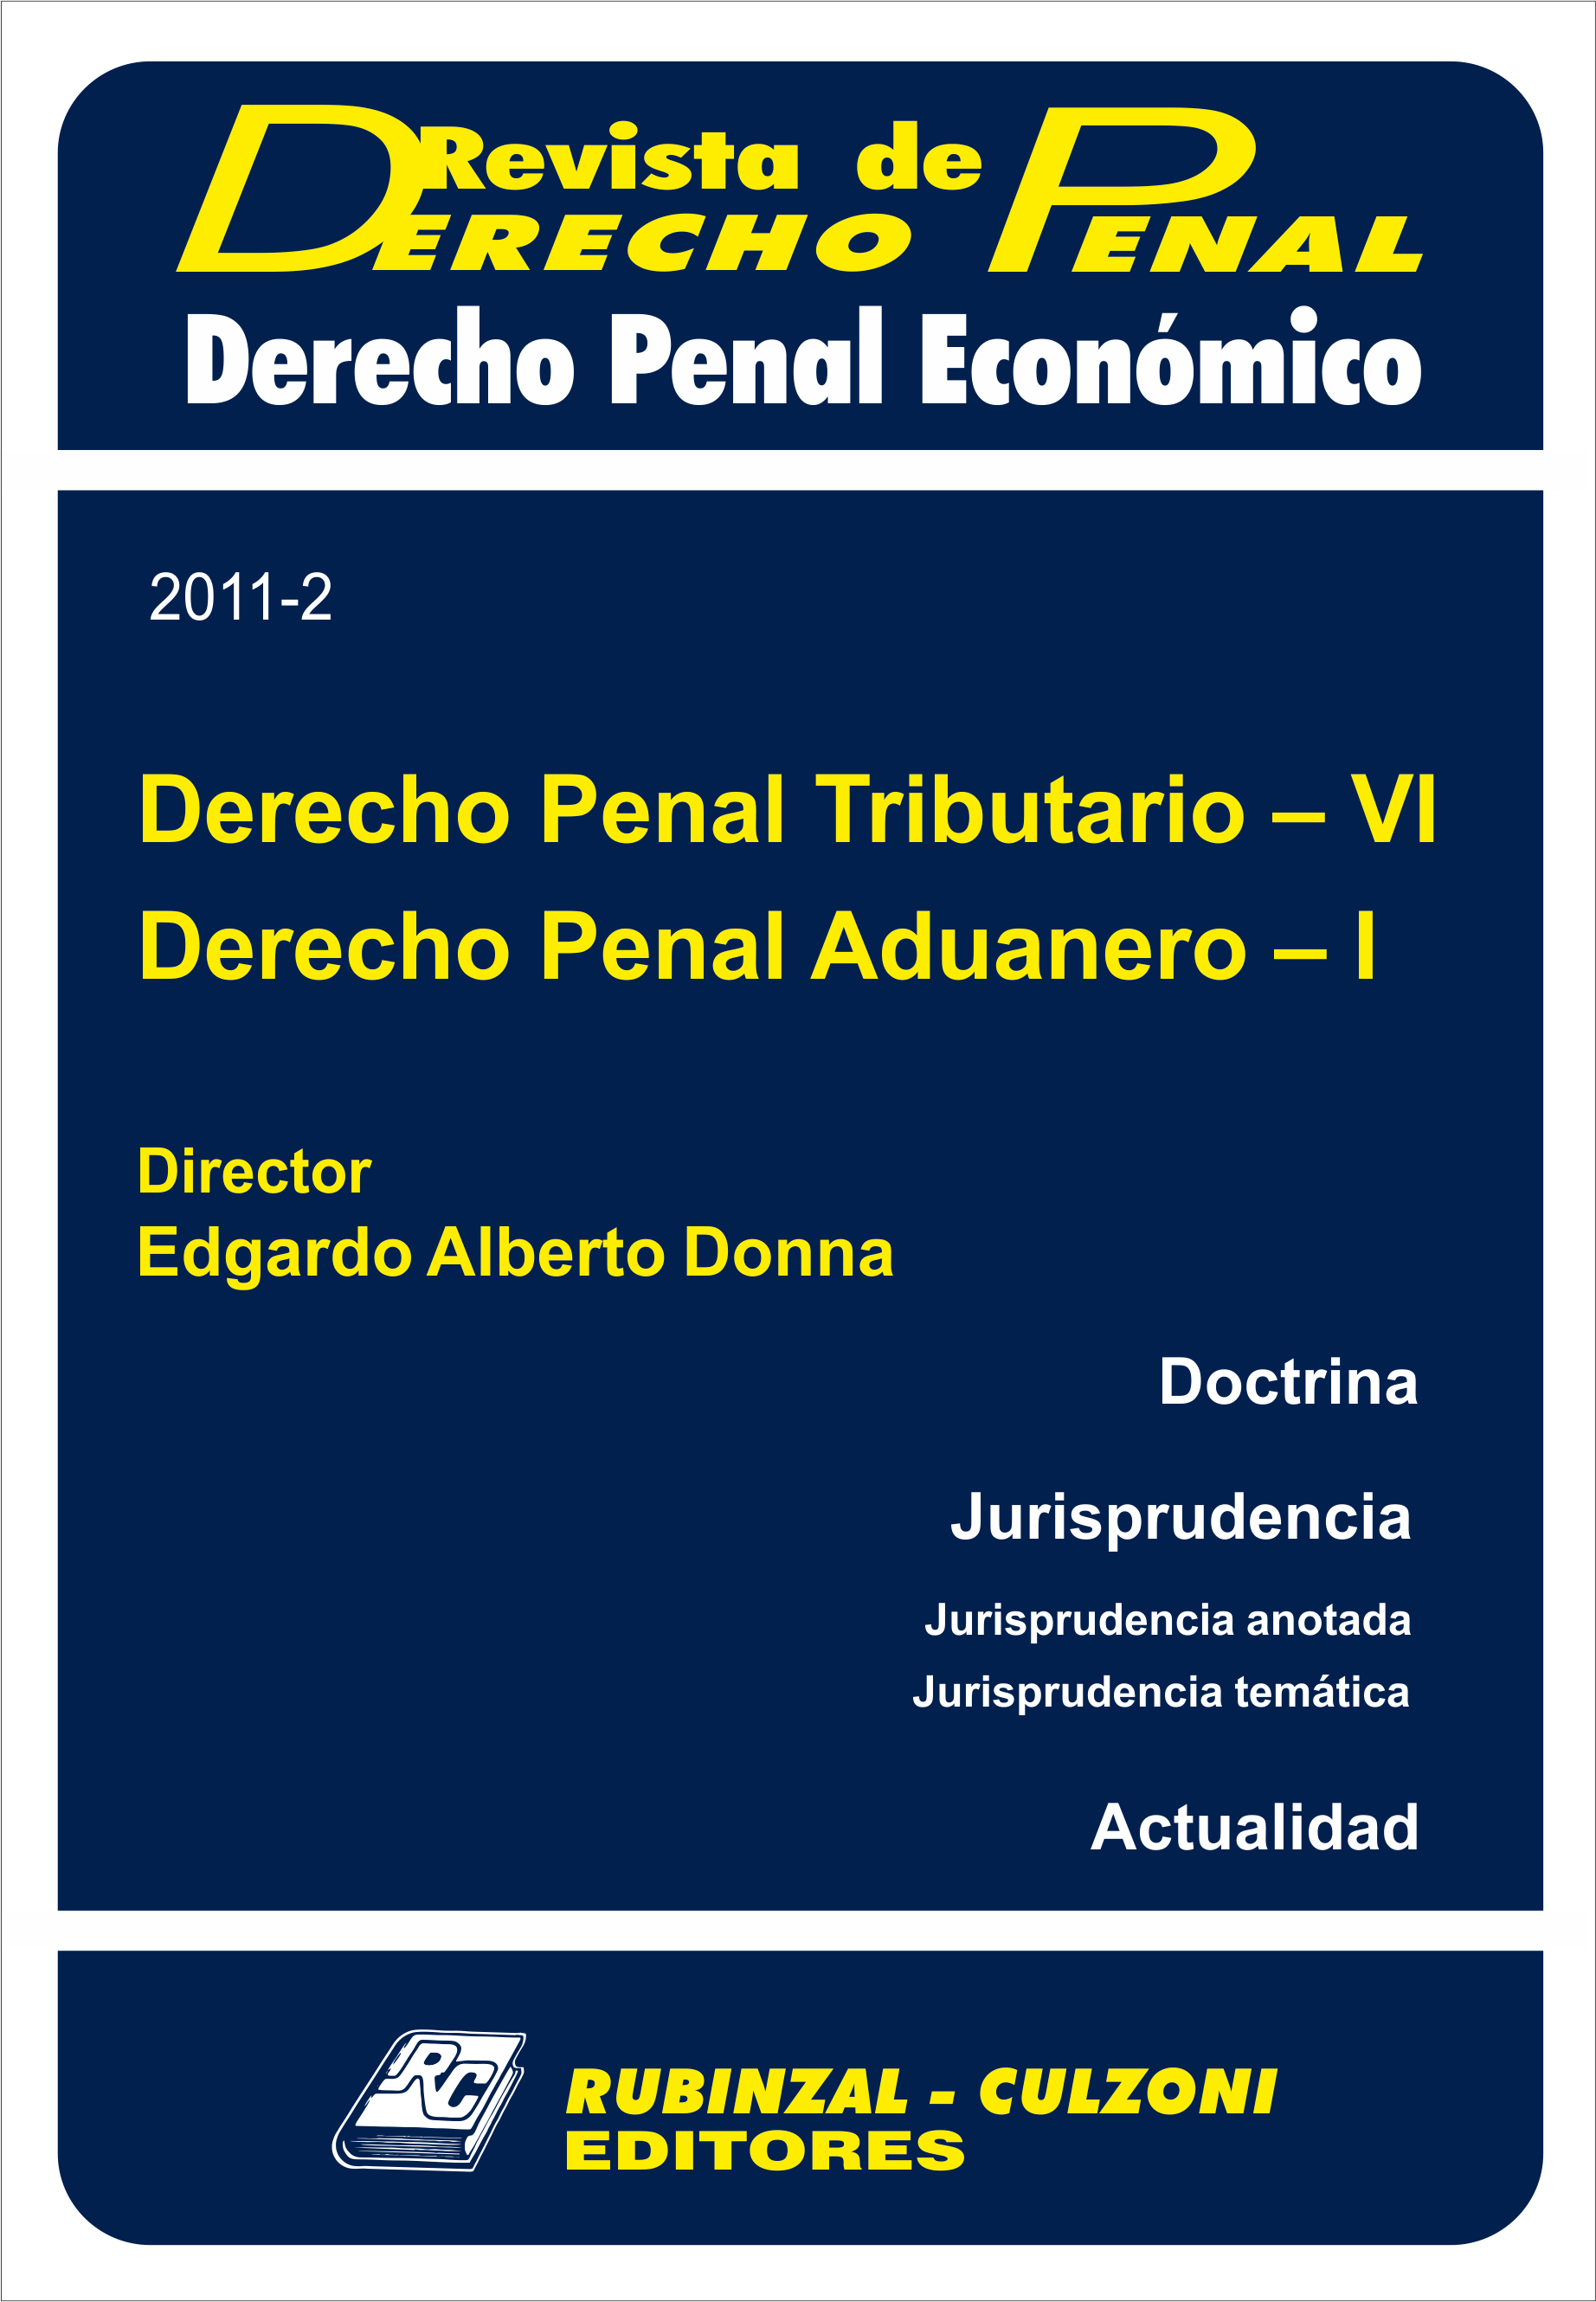 Revista de Derecho Penal Económico - Derecho Penal Tributario - VI y Derecho Penal Aduanero - I